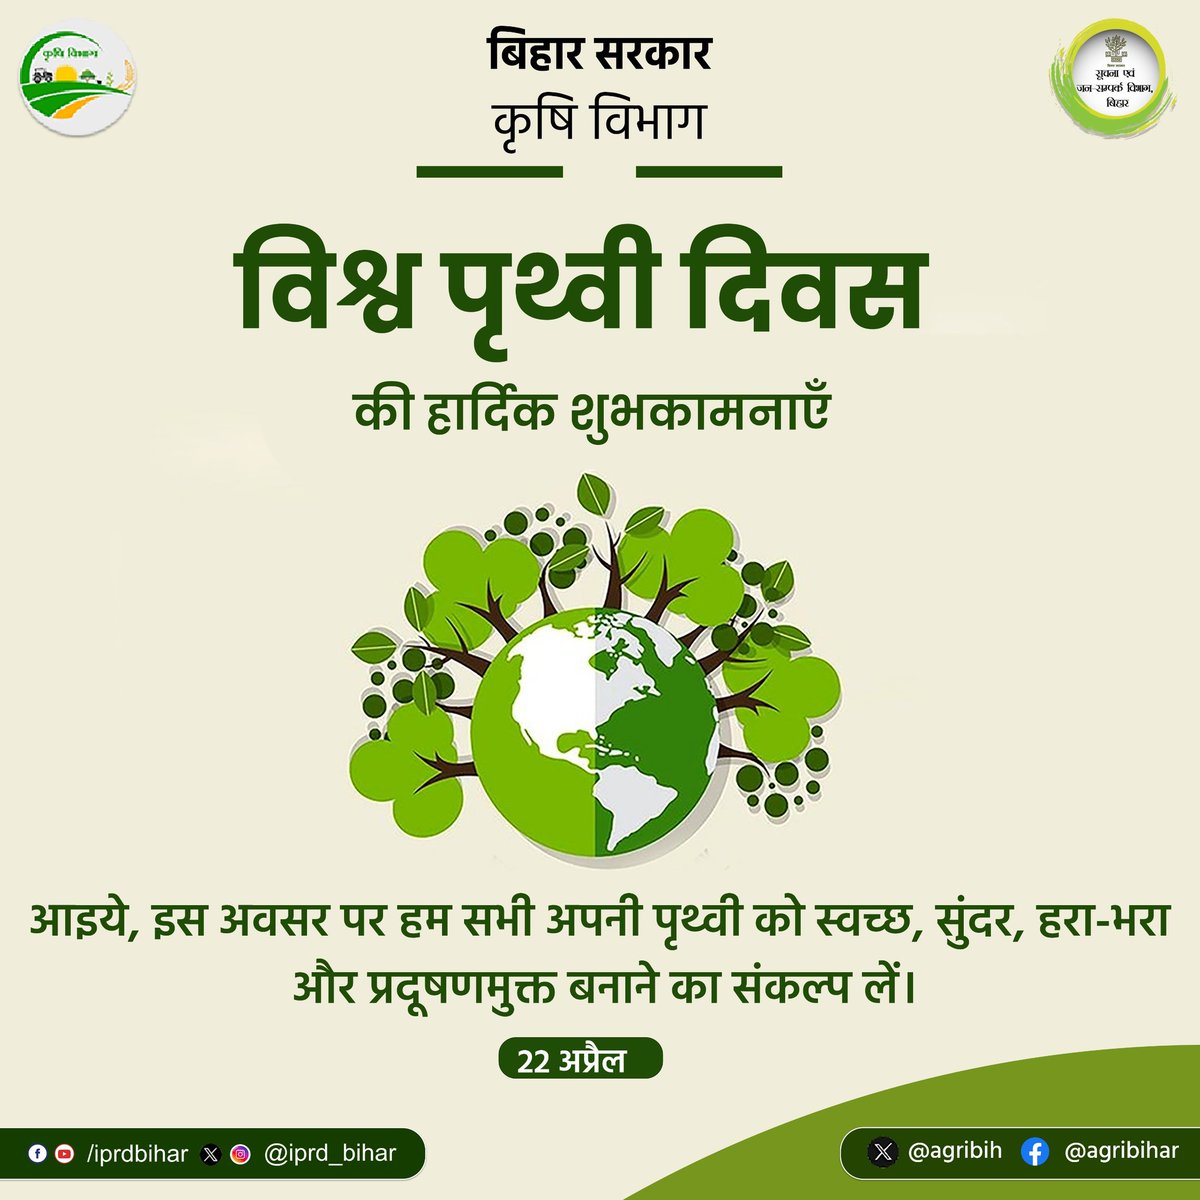 देश और राज्यवासियों को विश्व पृथ्वी दिवस की हार्दिक शुभकामनाएं । आइए, इस अवसर पर हम सभी मिलकर अपनी धरती को स्वच्छ, सुंदर, हरा-भरा और प्रदूषणमुक्त बनाने का संकल्प करें। @SAgarwal_IAS @abhitwittt @BametiBihar @AgriGoI @IPRD_Bihar #EarthDay #WorldEarthDay2024